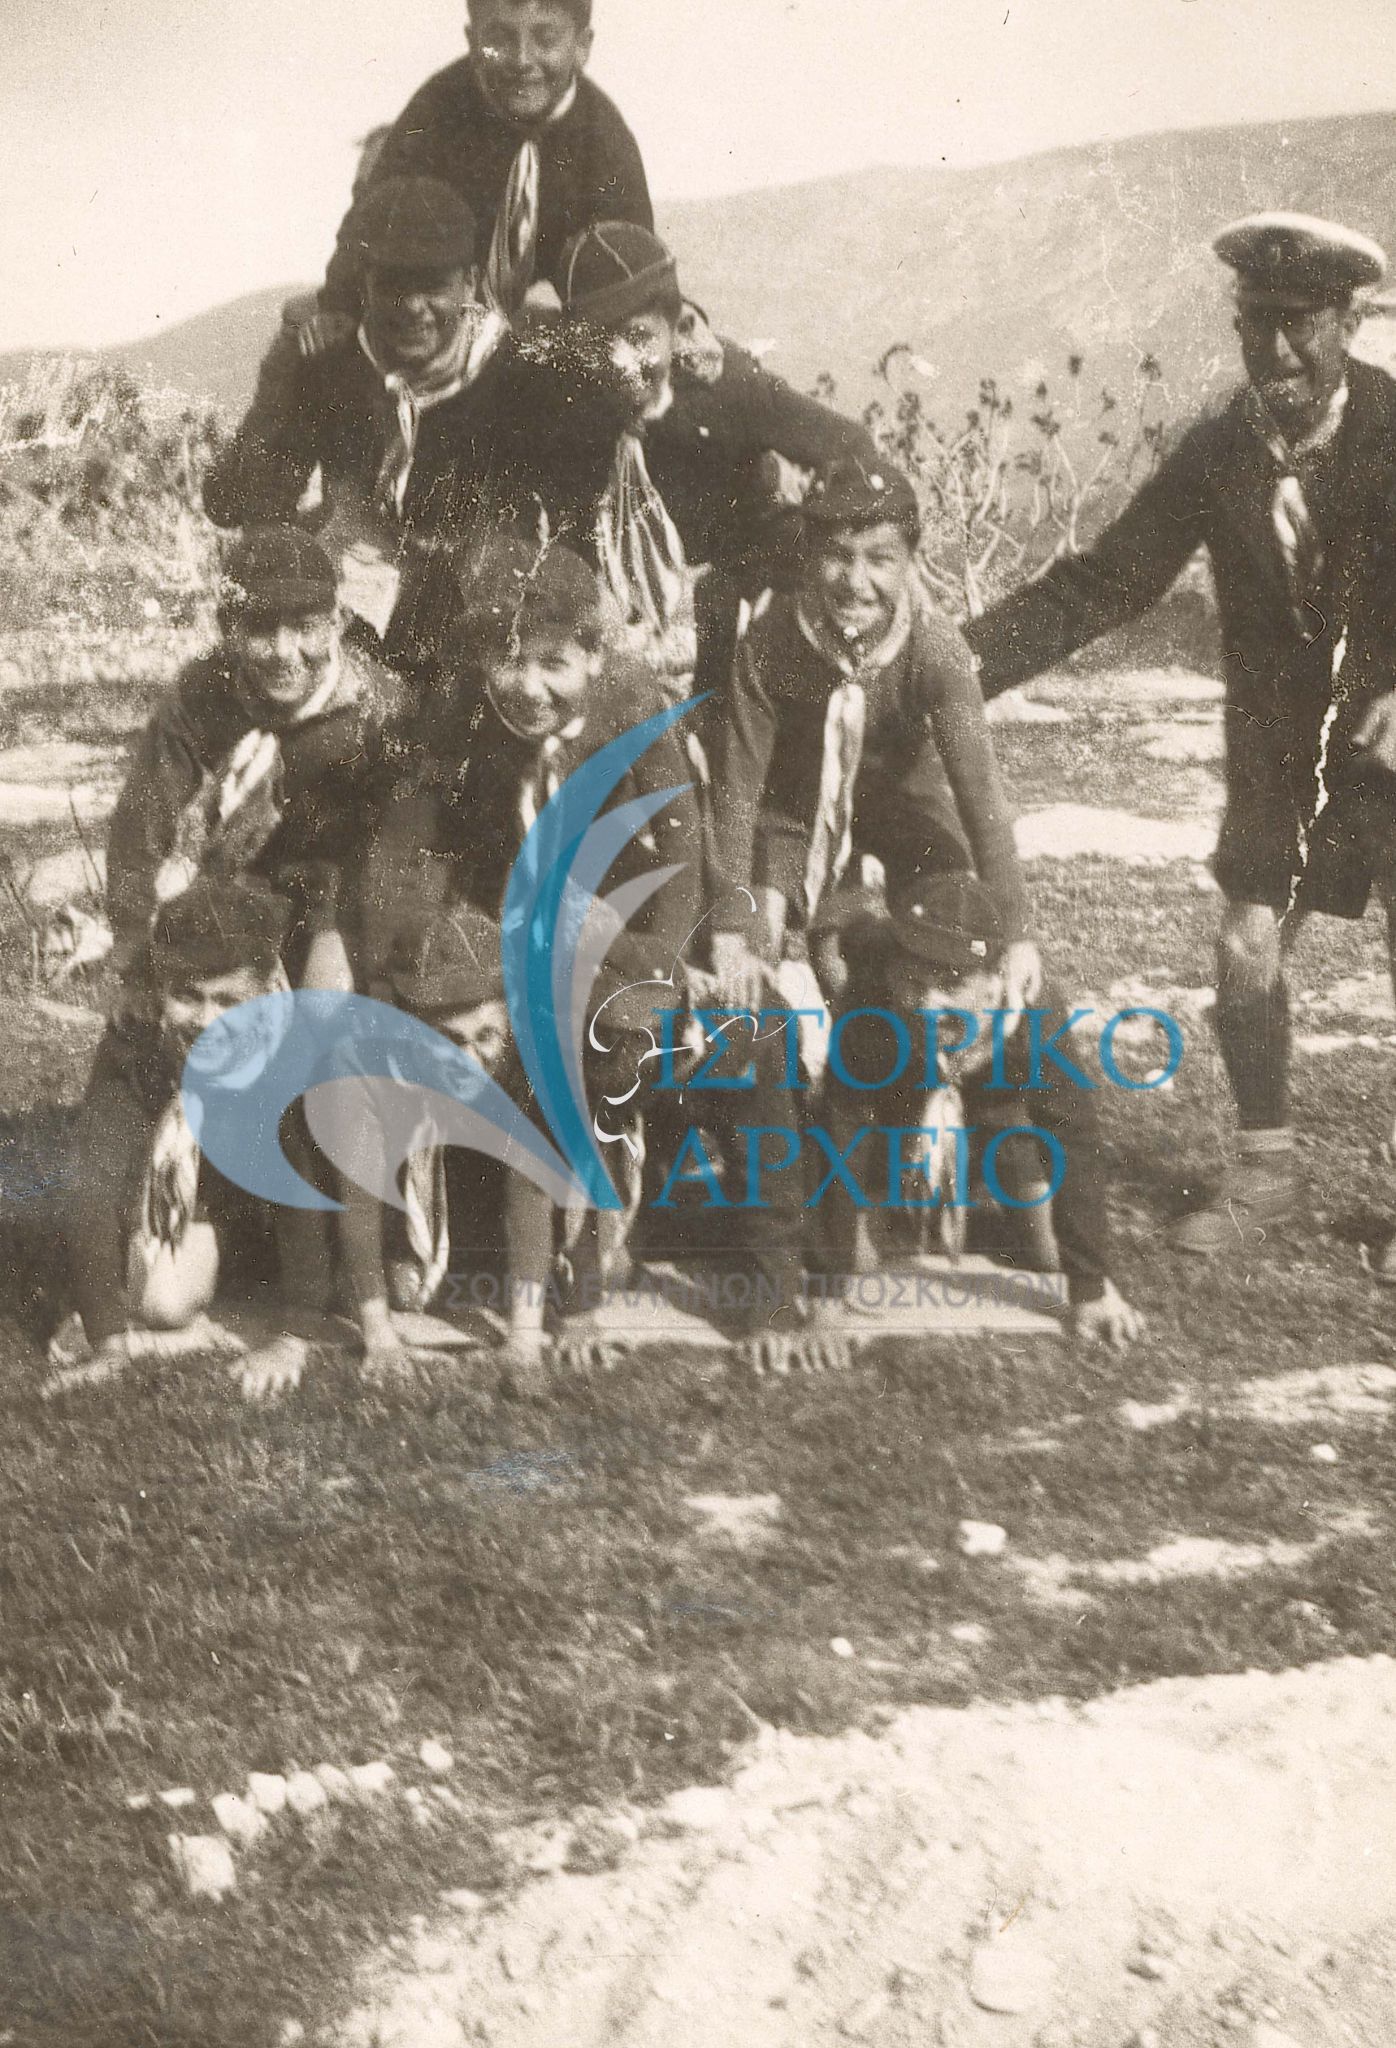 Ο Τηλέμαχος Γκαζιάνης σε ώρα δράσης με την 9η Αγέλη Αθηνών σε εκδρομή στην Καισαριανή το 1937.